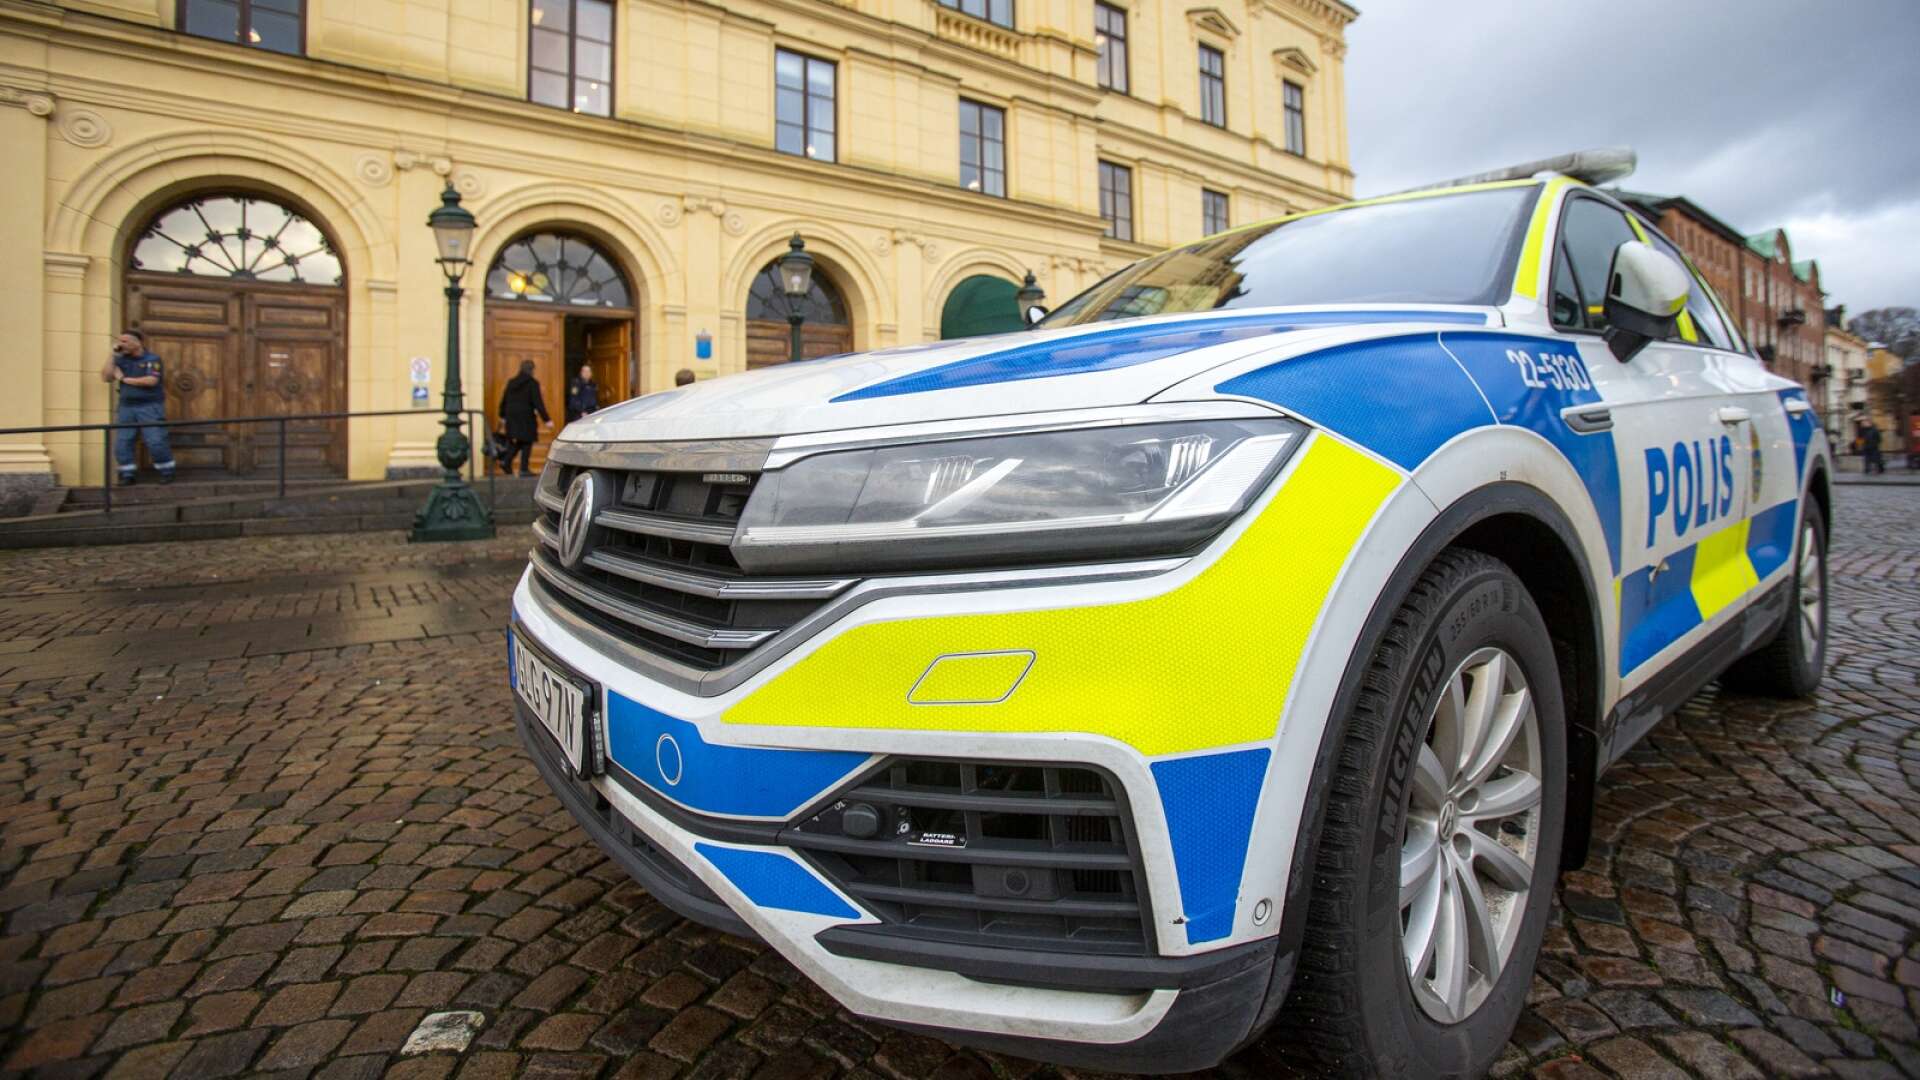 Den notoriske återfallsförbrytaren från Karlstad dömdes på måndagen till ytterligare ett fängelsestraff. Denna gång för att ha attackerat sin ex-flickvän och begått en del mindre brott.